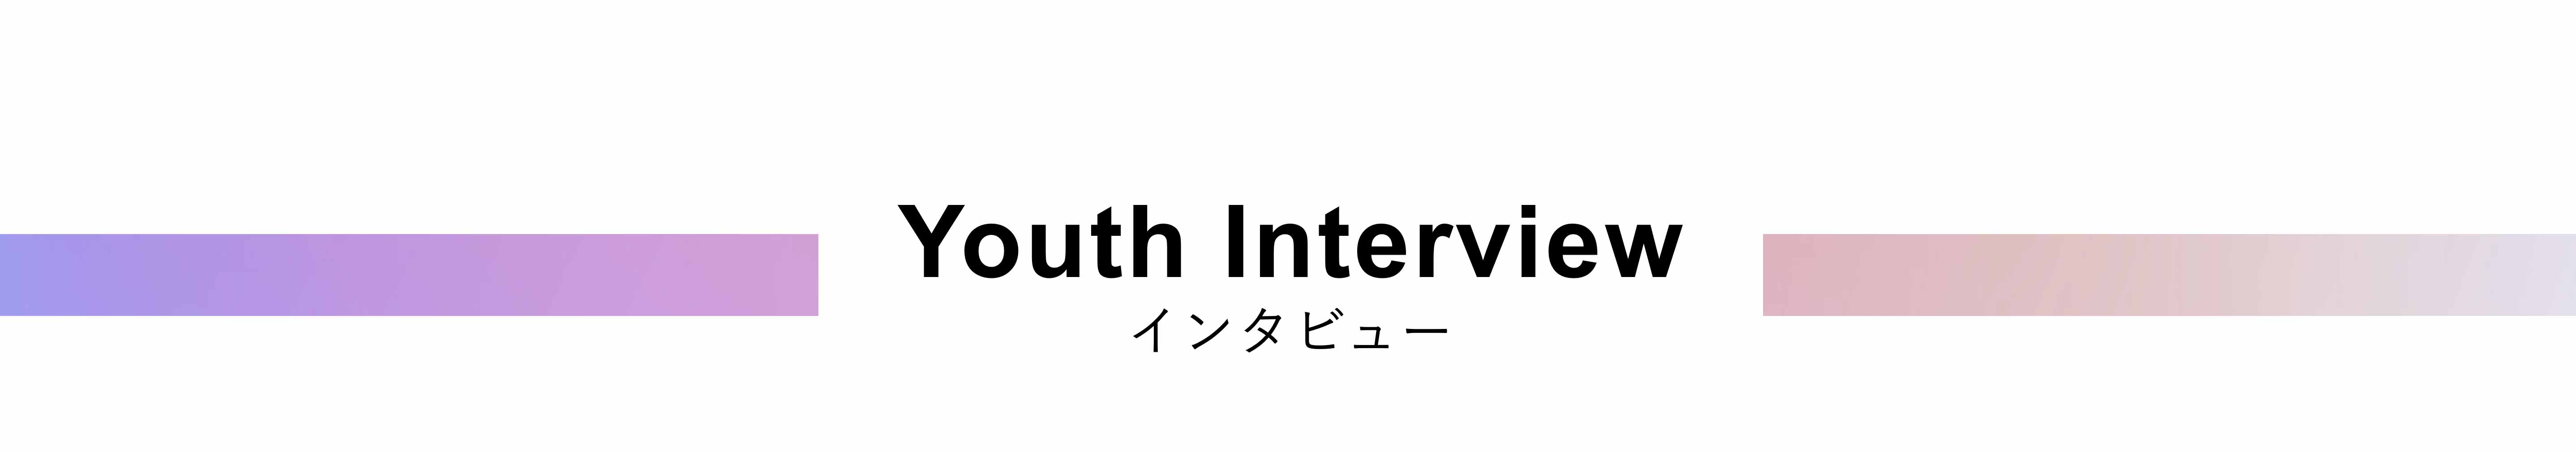 Interview-インタビュー-